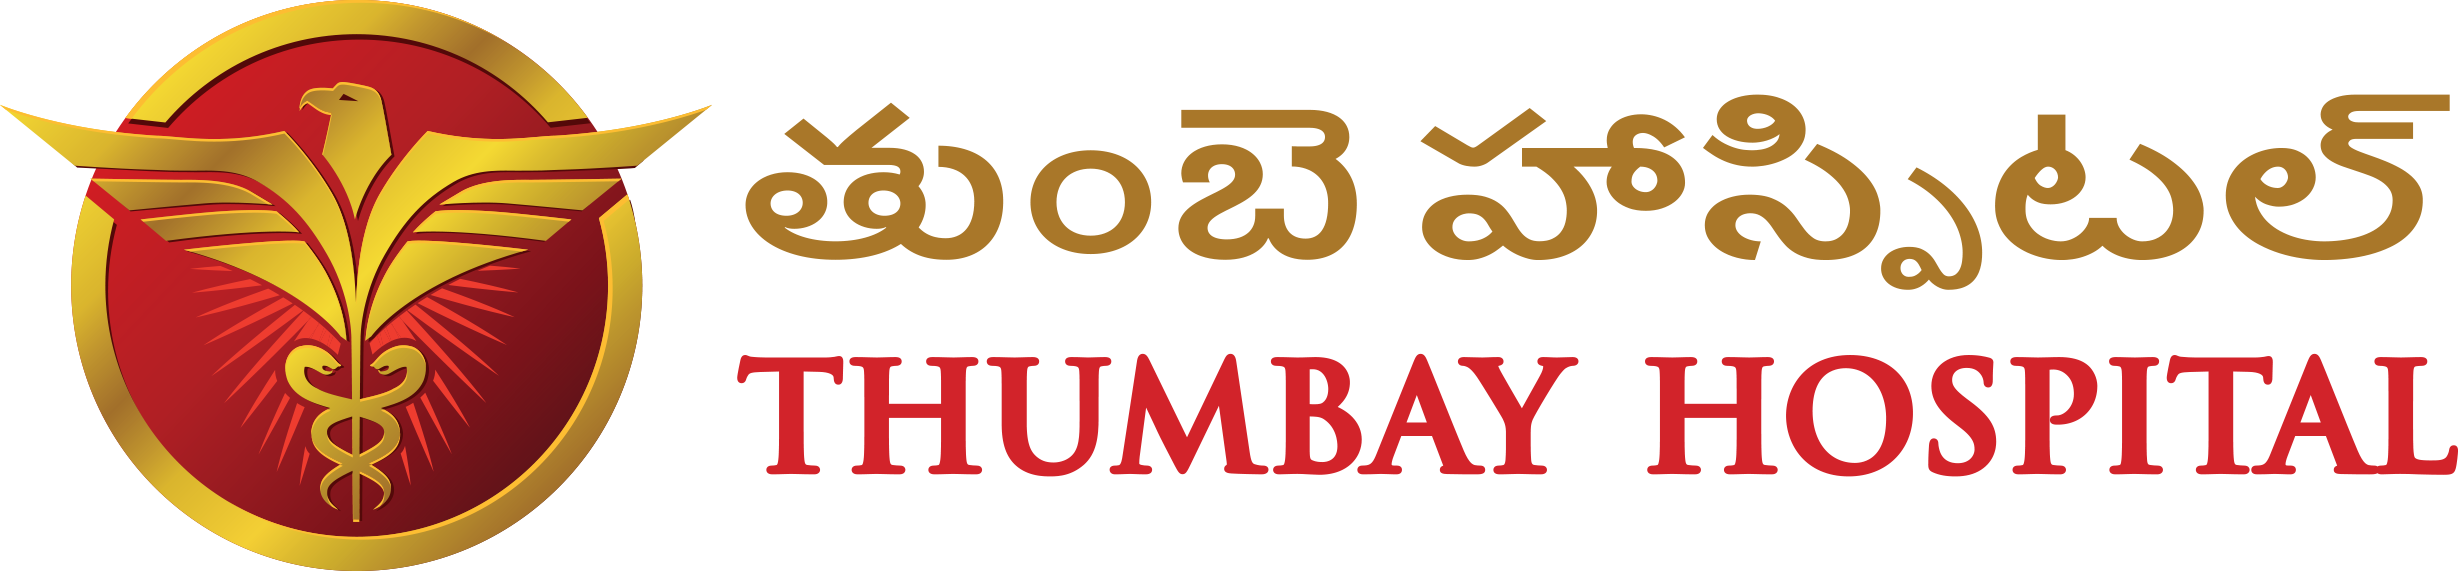 Thumbay Hospital - Logo